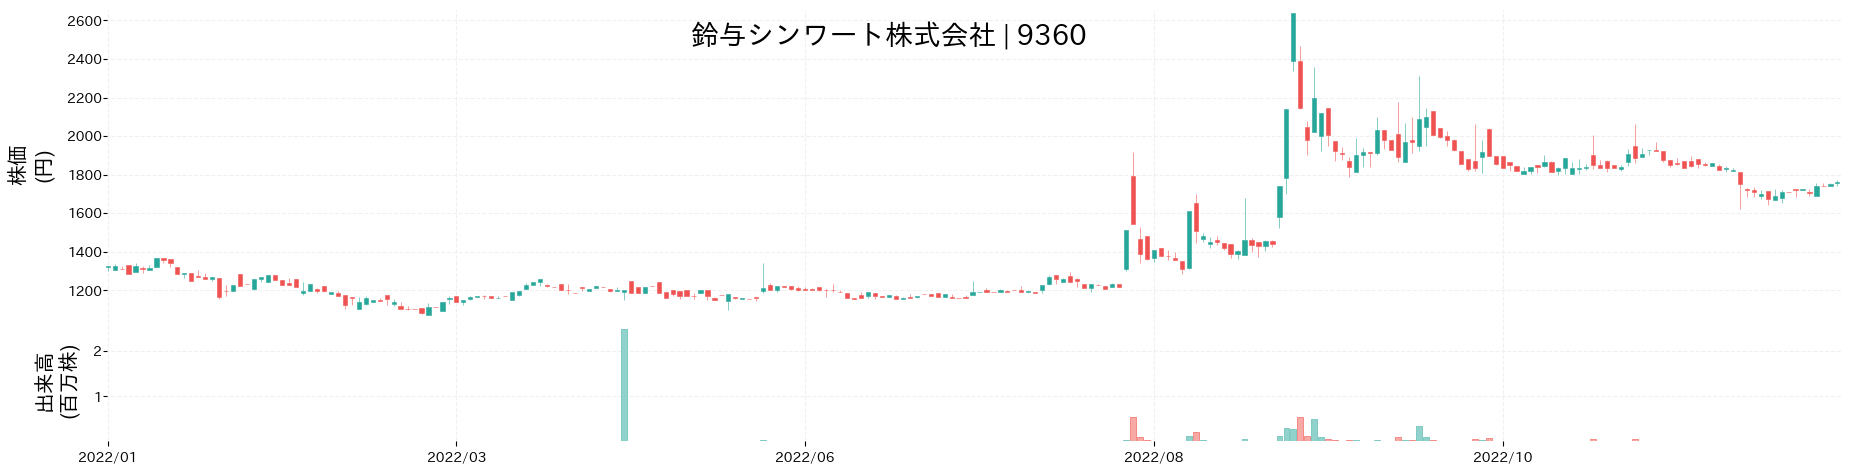 鈴与シンワートの株価推移(2022)